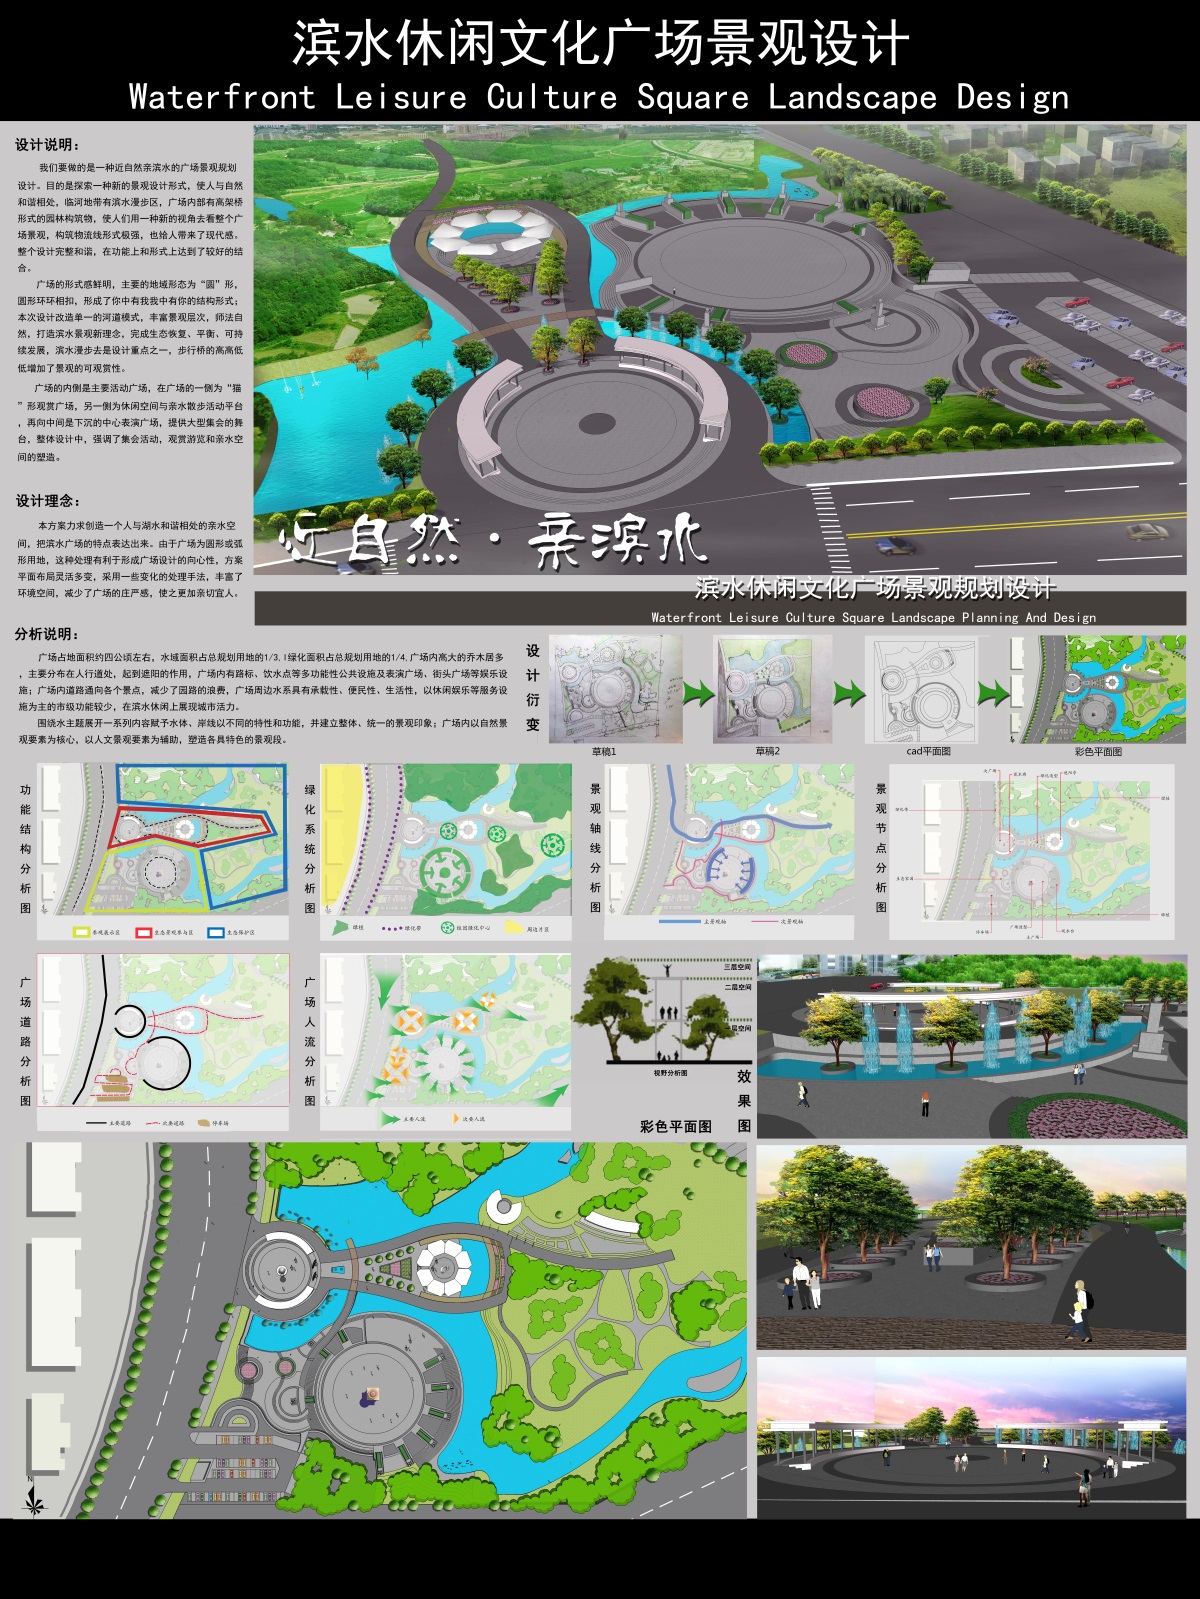 滨水休闲文化广场景观设计-2